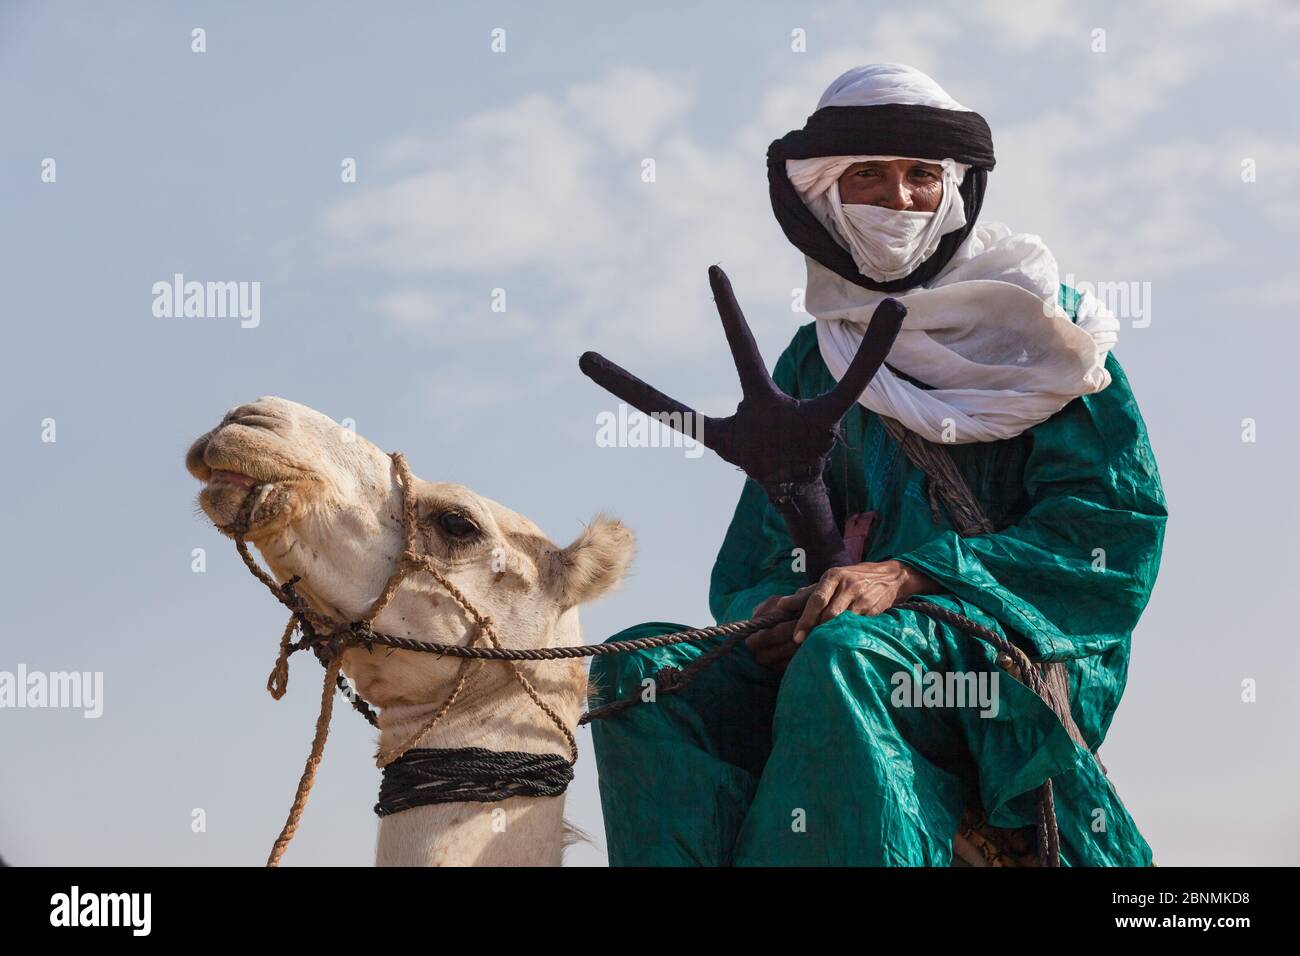 tuareg homme dans des vêtements traditionnels assis sur un chameau Banque D'Images